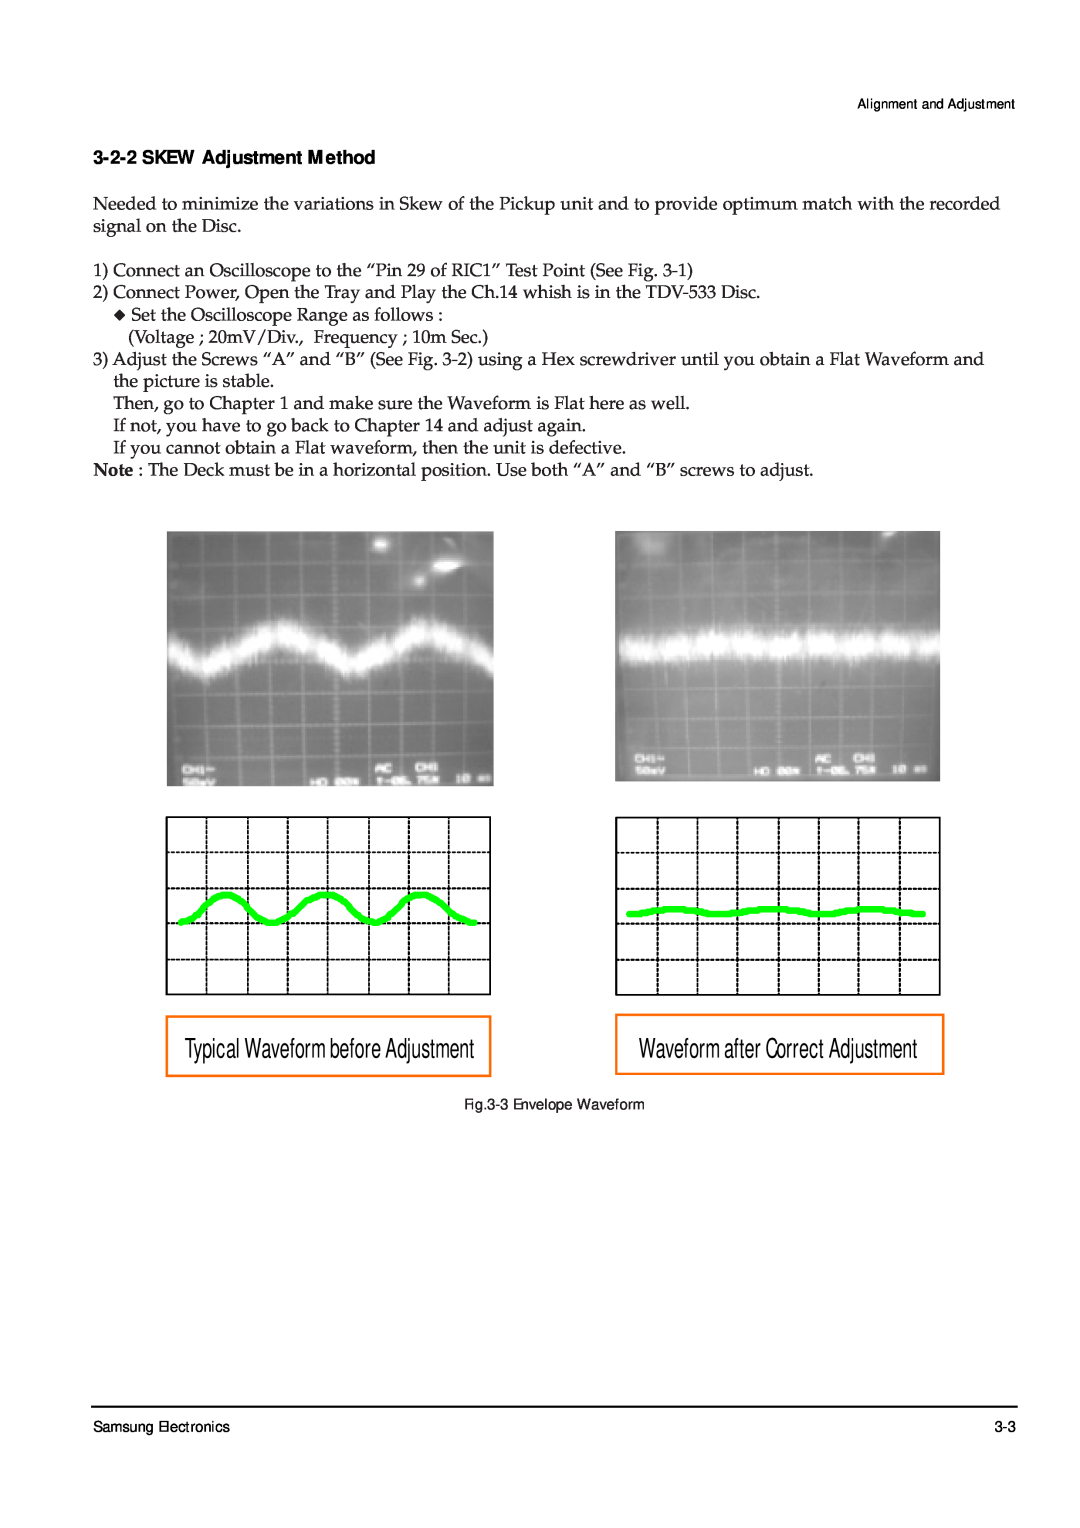 Samsung DVD-P355B/XEU Typical Waveform before Adjustment, Waveform after Correct Adjustment, SKEW Adjustment Method 